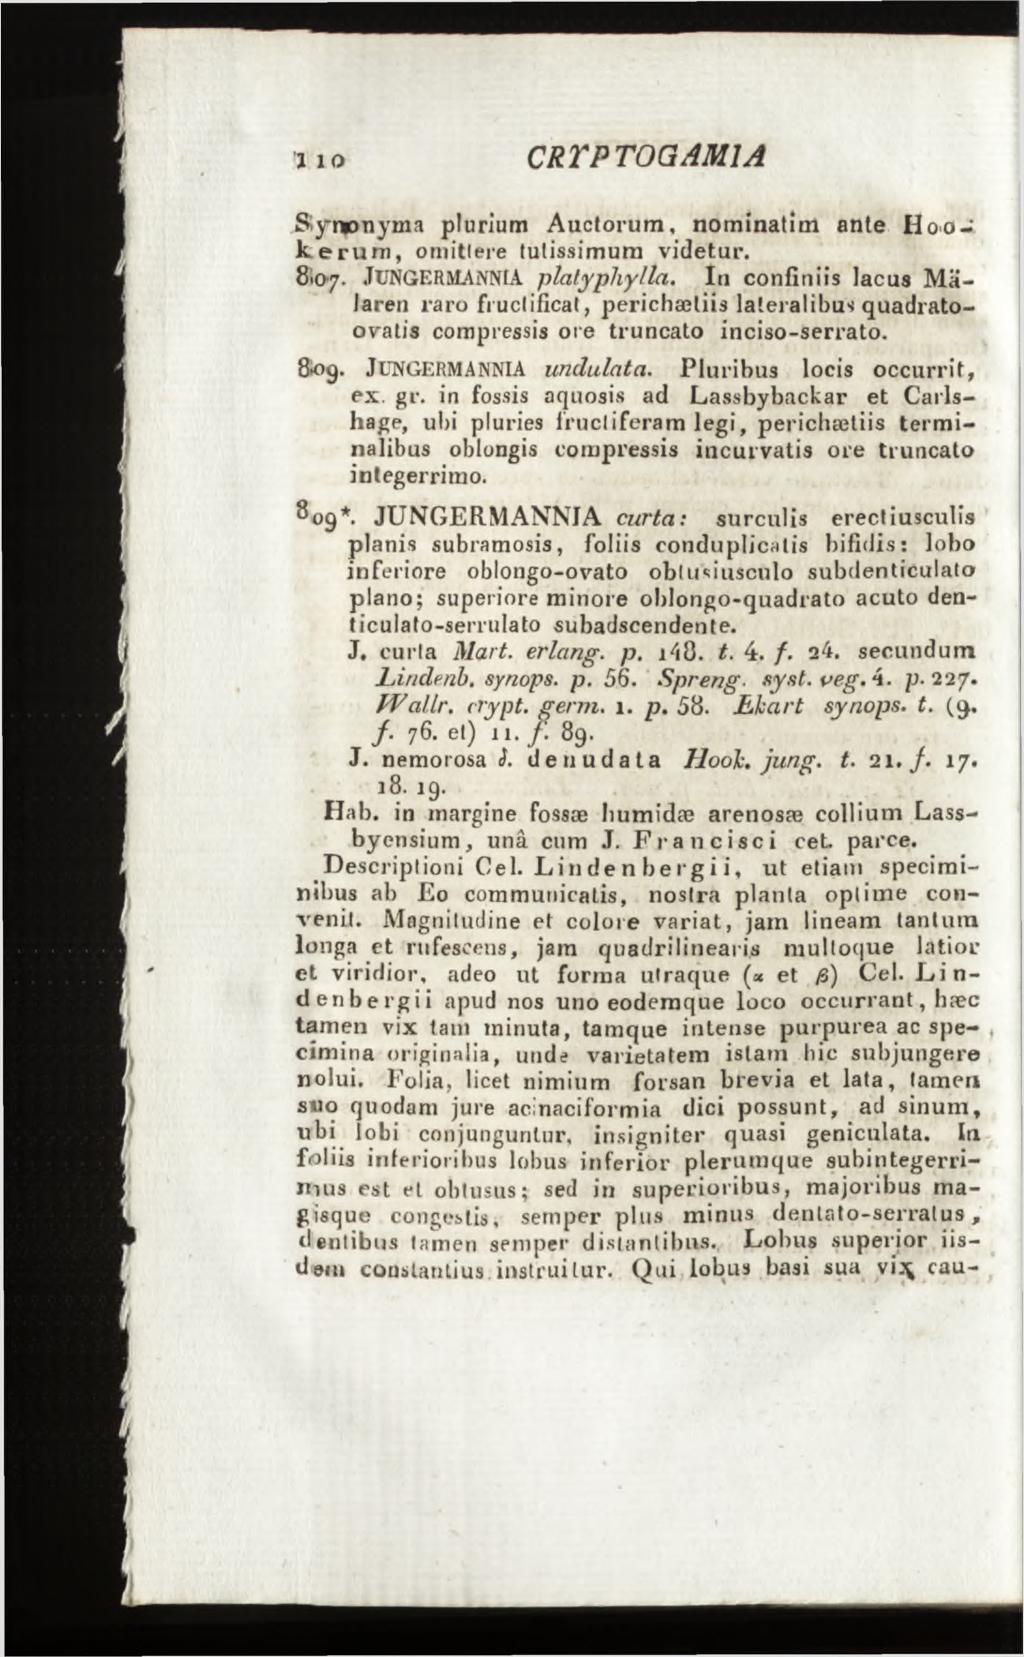 Synonyma plurlum Auctorum, nominatim ante Hooke rum, omittere tutissimum videtur. 8107. JUNGERMANNIA platypliylla.